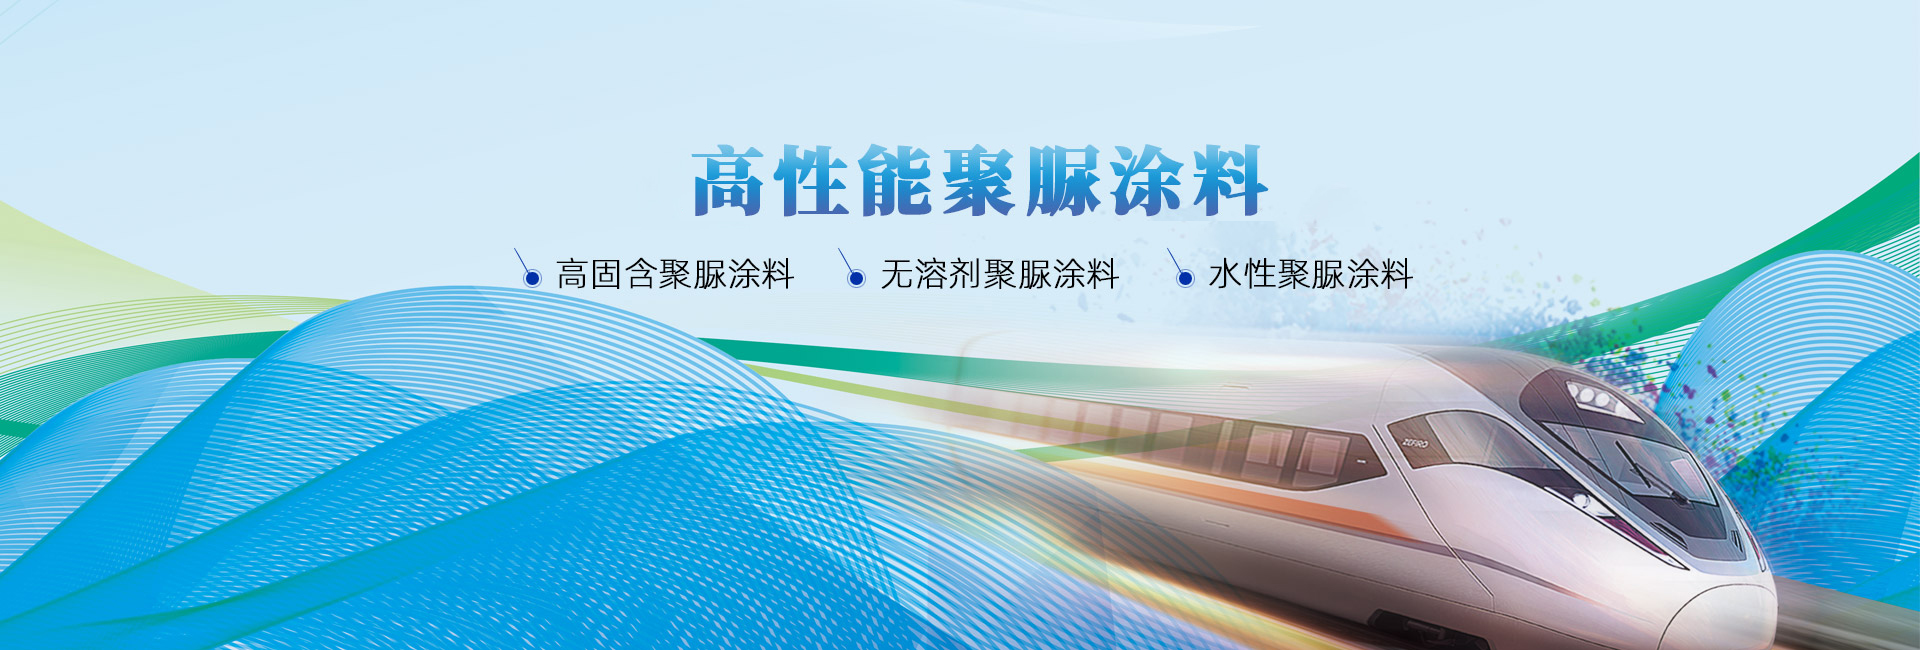 南京蓝风新材料科技有限公司